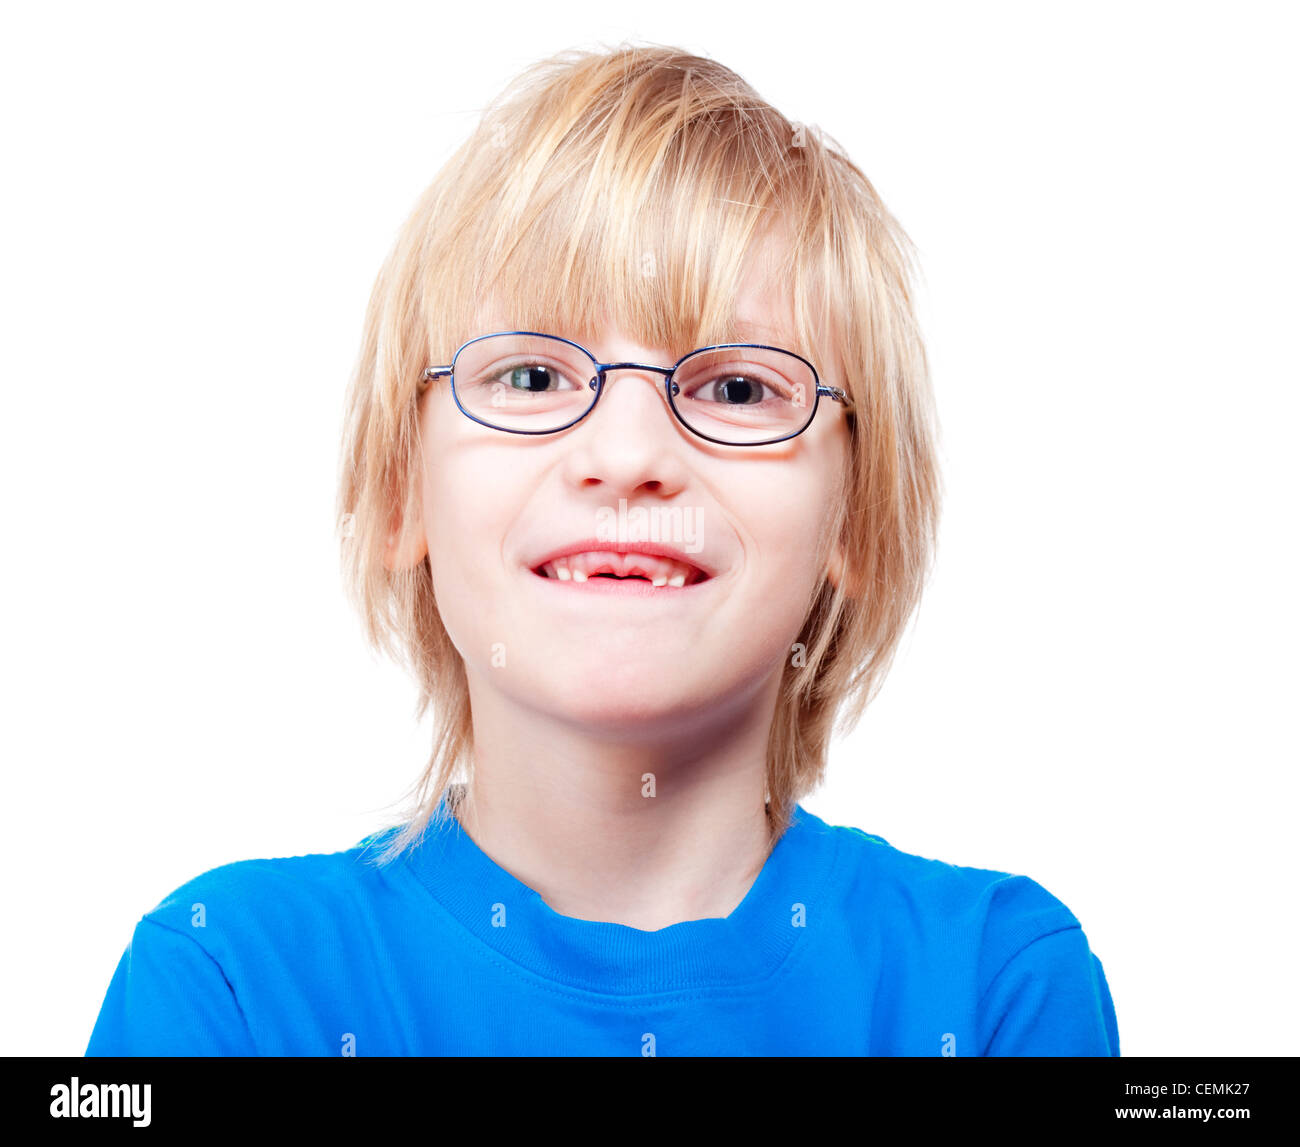 Portrait d'un garçon avec des lunettes montrant ses premières dents de lait manquantes Banque D'Images